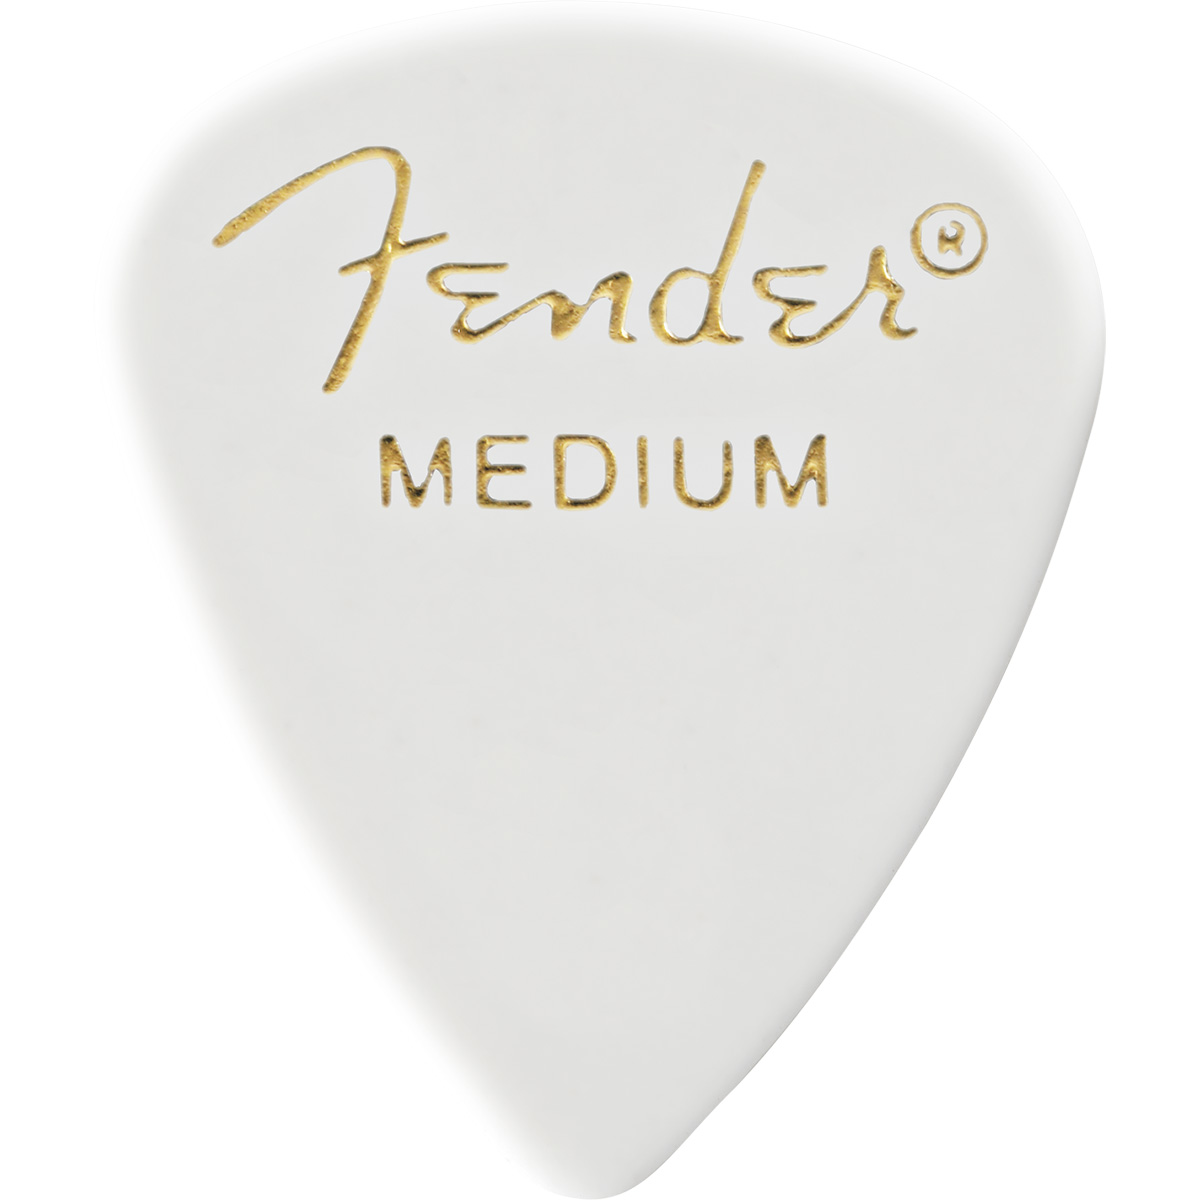 198円 安い購入 Fender 351 PICK 12 MEDIUM ピック 12枚セット ティアドロップ型 ミディアム 紙吹雪柄